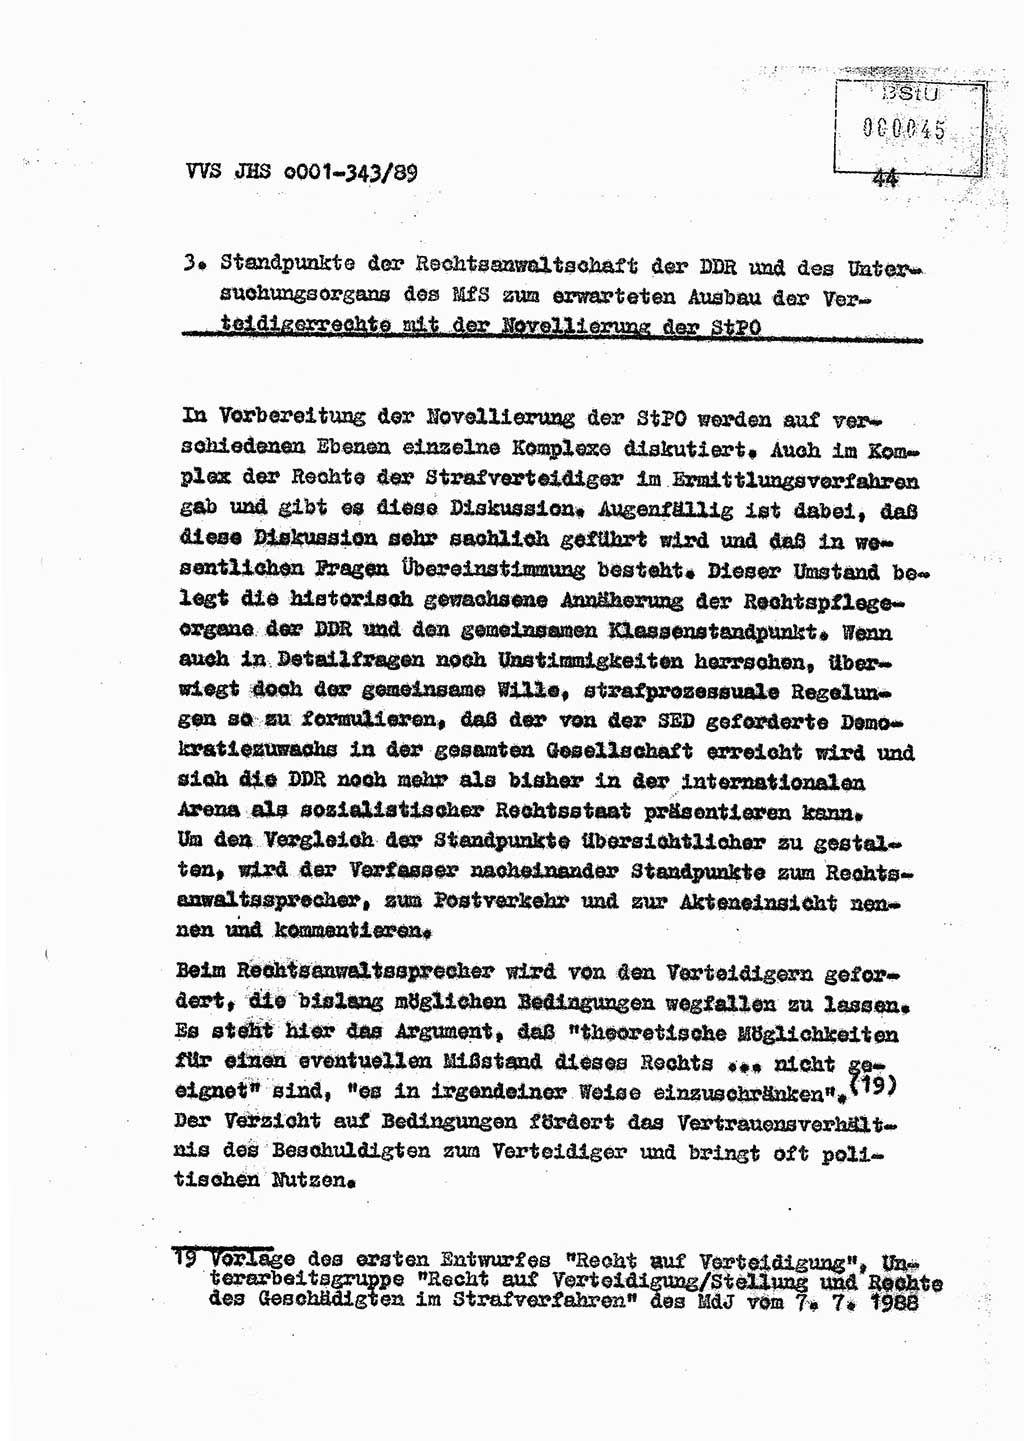 Diplomarbeit Offiziersschüler Axel Henschke (HA Ⅸ/9), Ministerium für Staatssicherheit (MfS) [Deutsche Demokratische Republik (DDR)], Juristische Hochschule (JHS), Vertrauliche Verschlußsache (VVS) o001-343/89, Potsdam 1989, Seite 44 (Dipl.-Arb. MfS DDR JHS VVS o001-343/89 1989, S. 44)